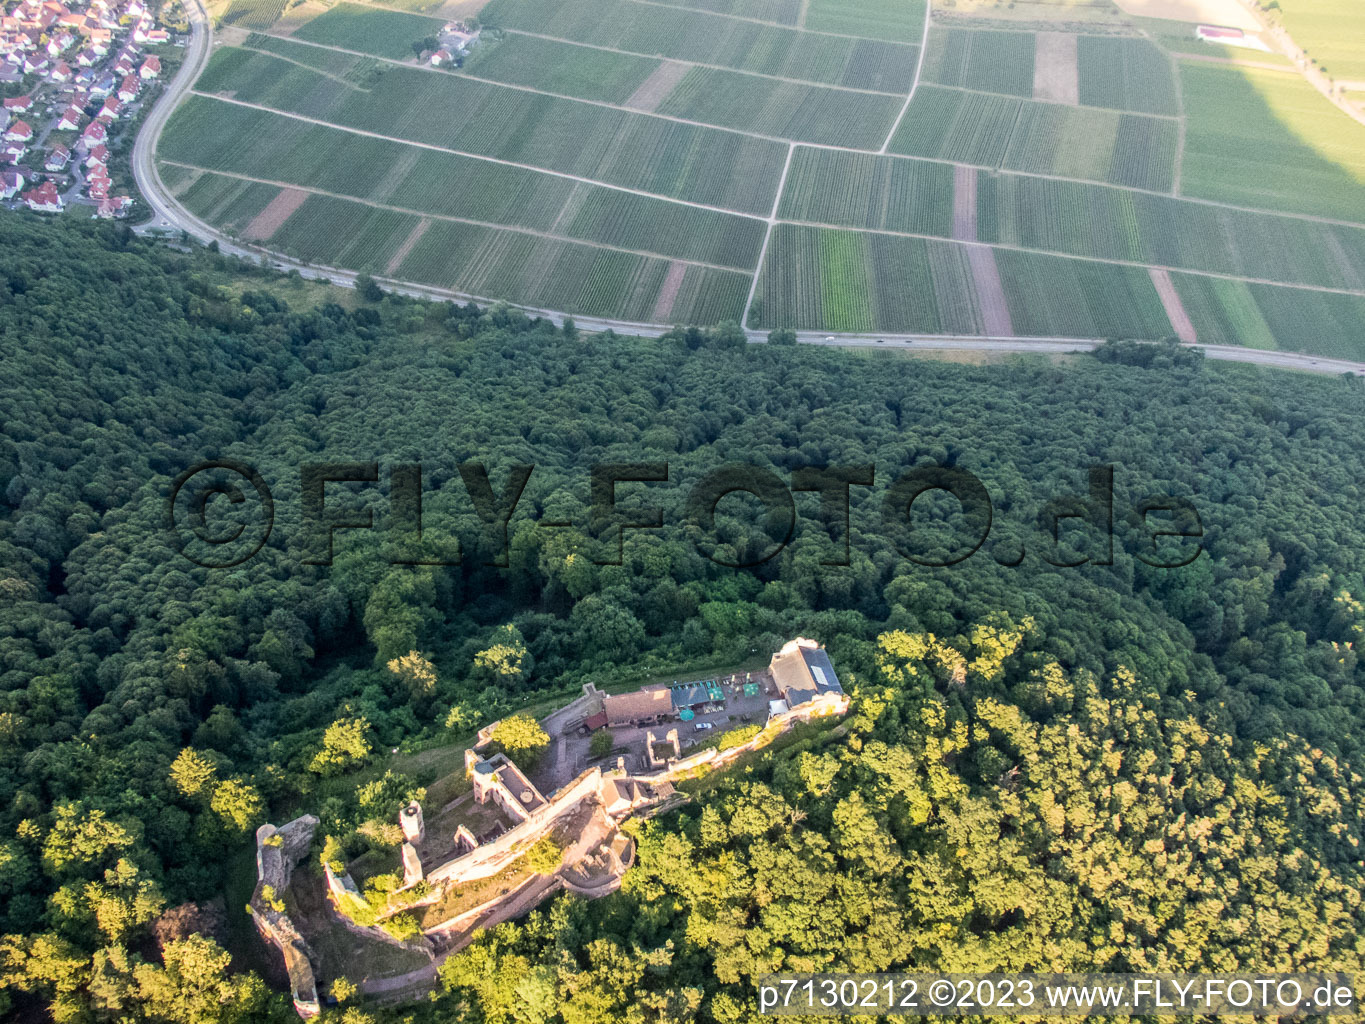 Madenbourg à Eschbach dans le département Rhénanie-Palatinat, Allemagne vu d'un drone